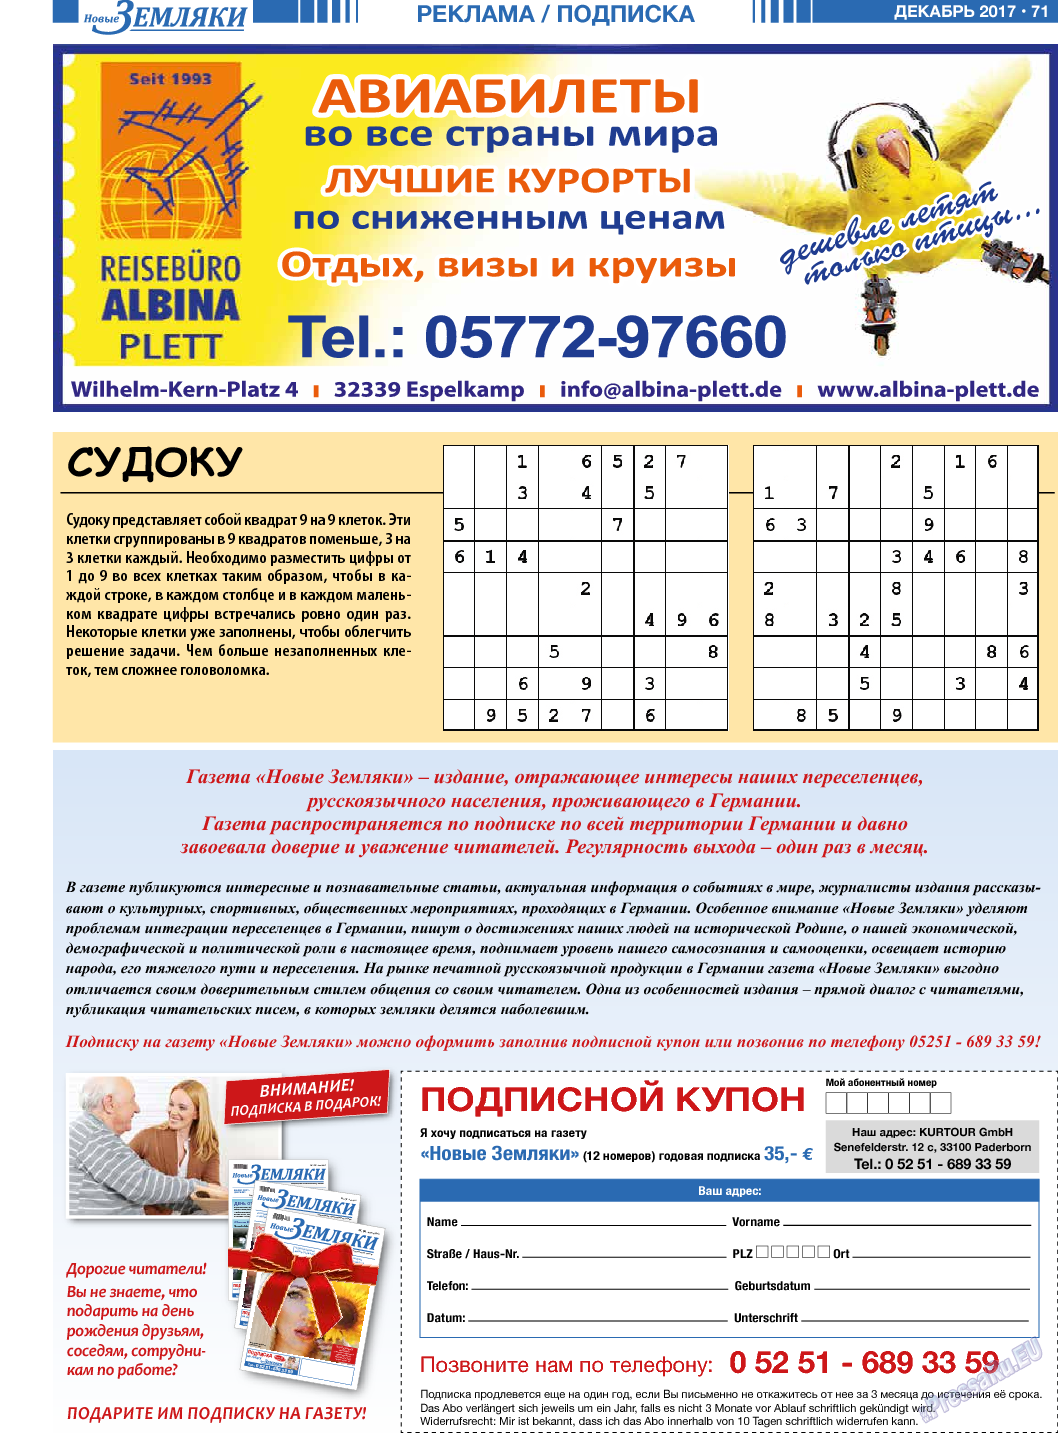 Новые Земляки (газета). 2017 год, номер 12, стр. 71